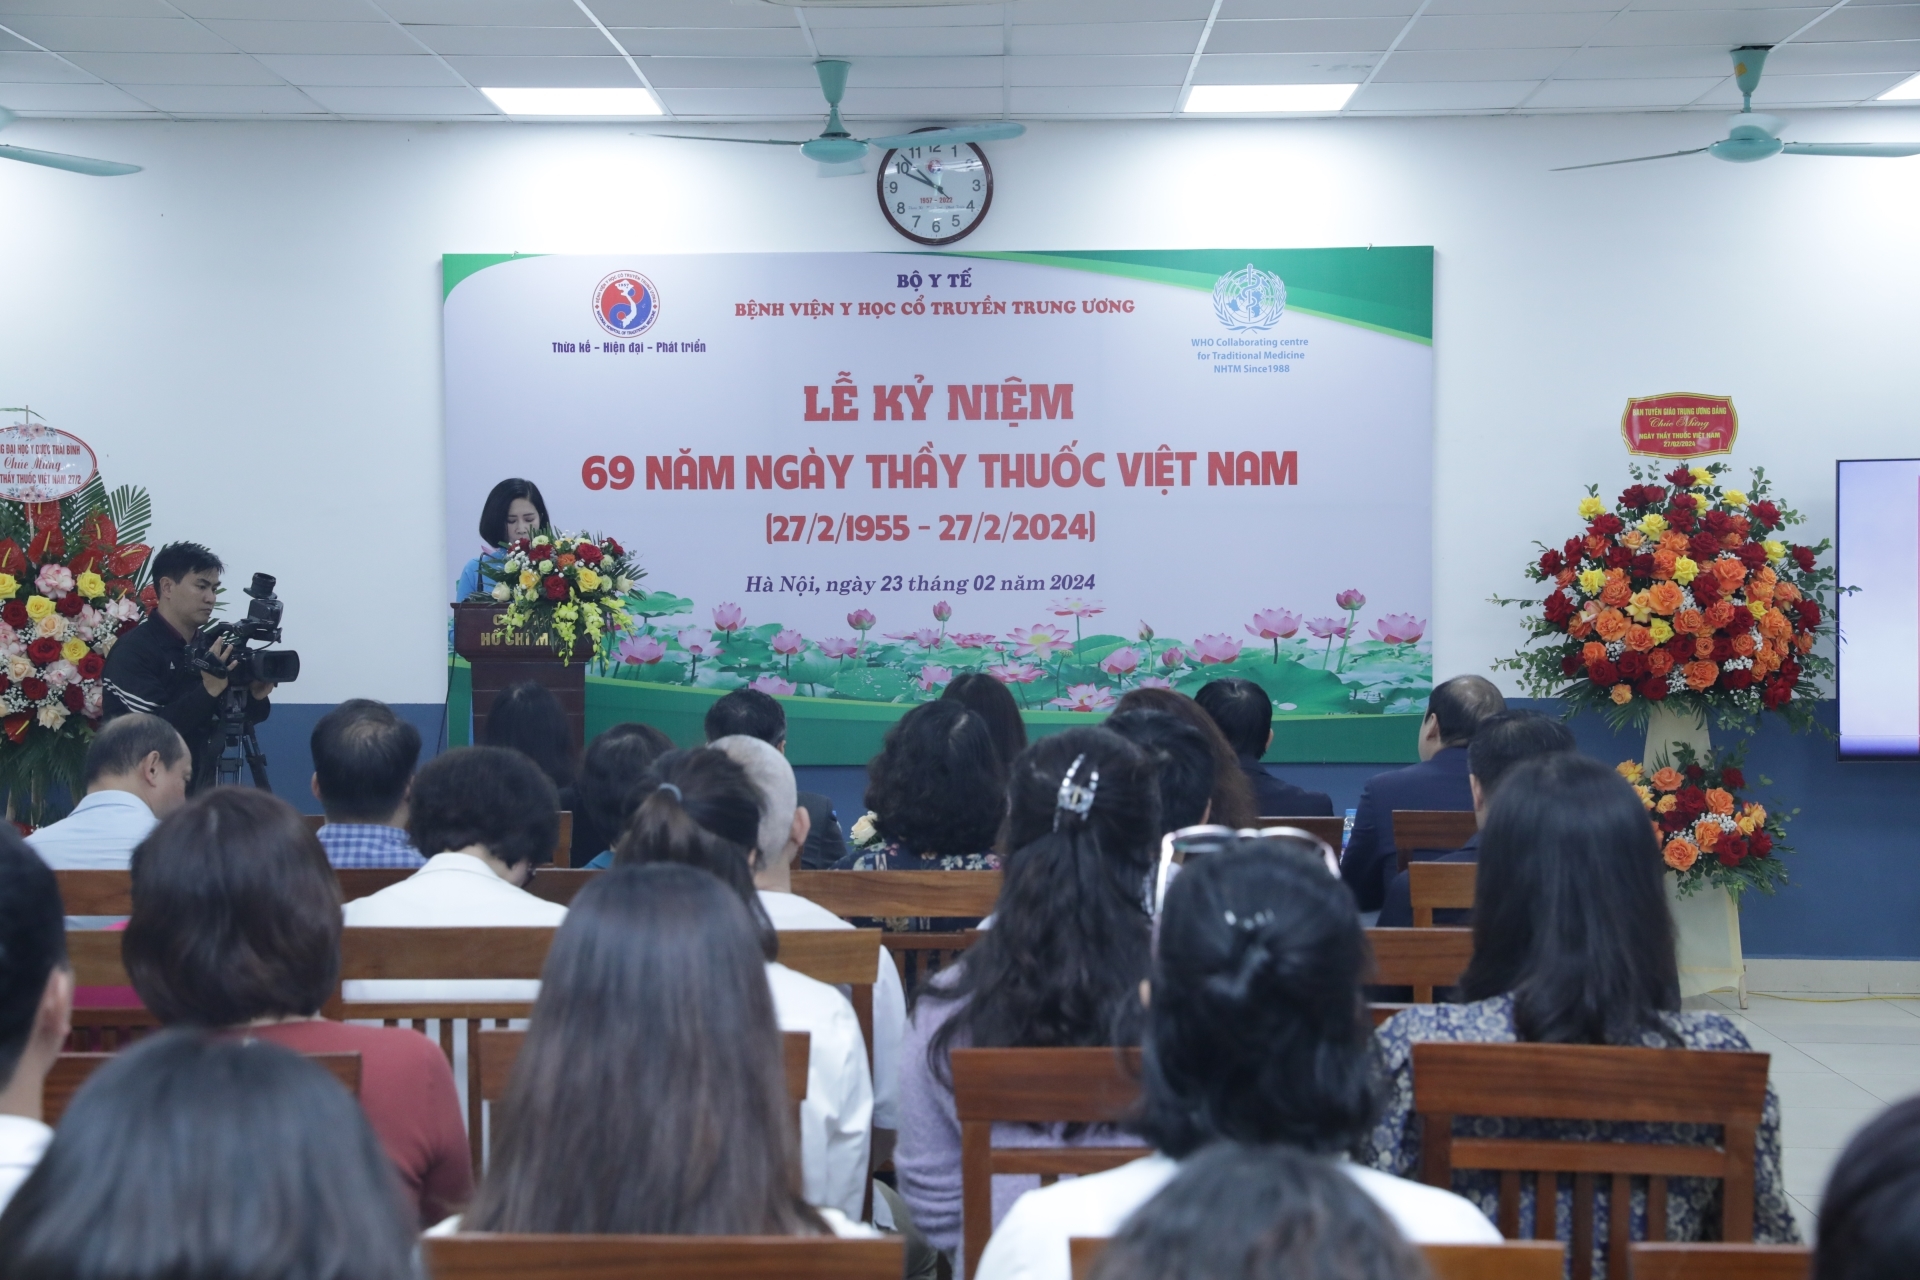 Đồng chí Lê Hải Bình tới thăm và chúc mừng Bệnh viện Y học cổ truyền Trung ương.